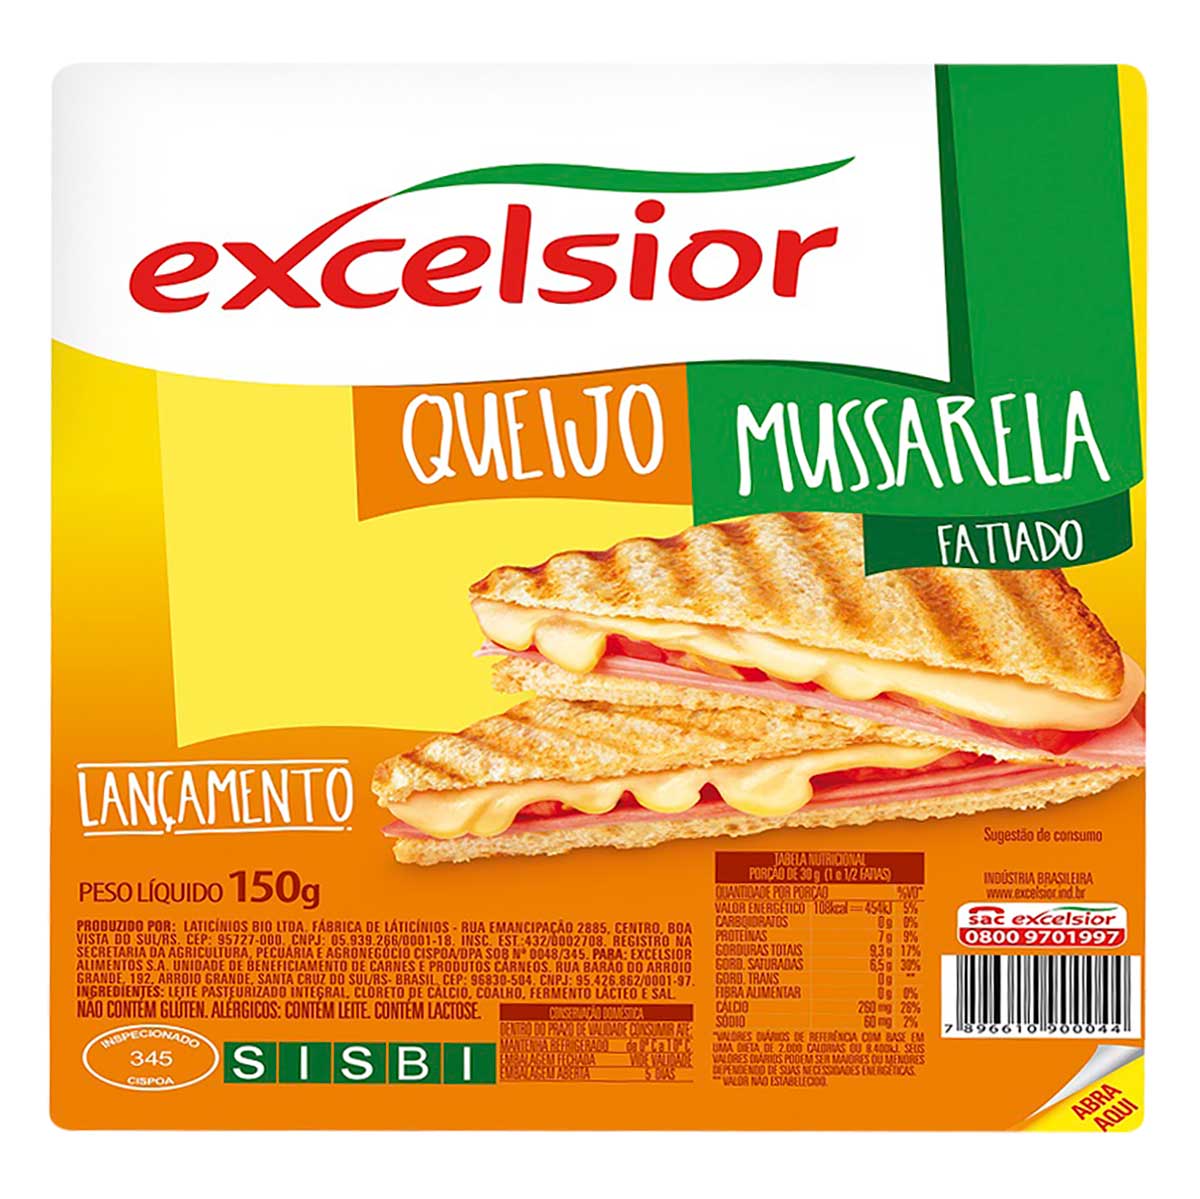 queijo-mussarela-fatiada-excelsior-150-g-1.jpg